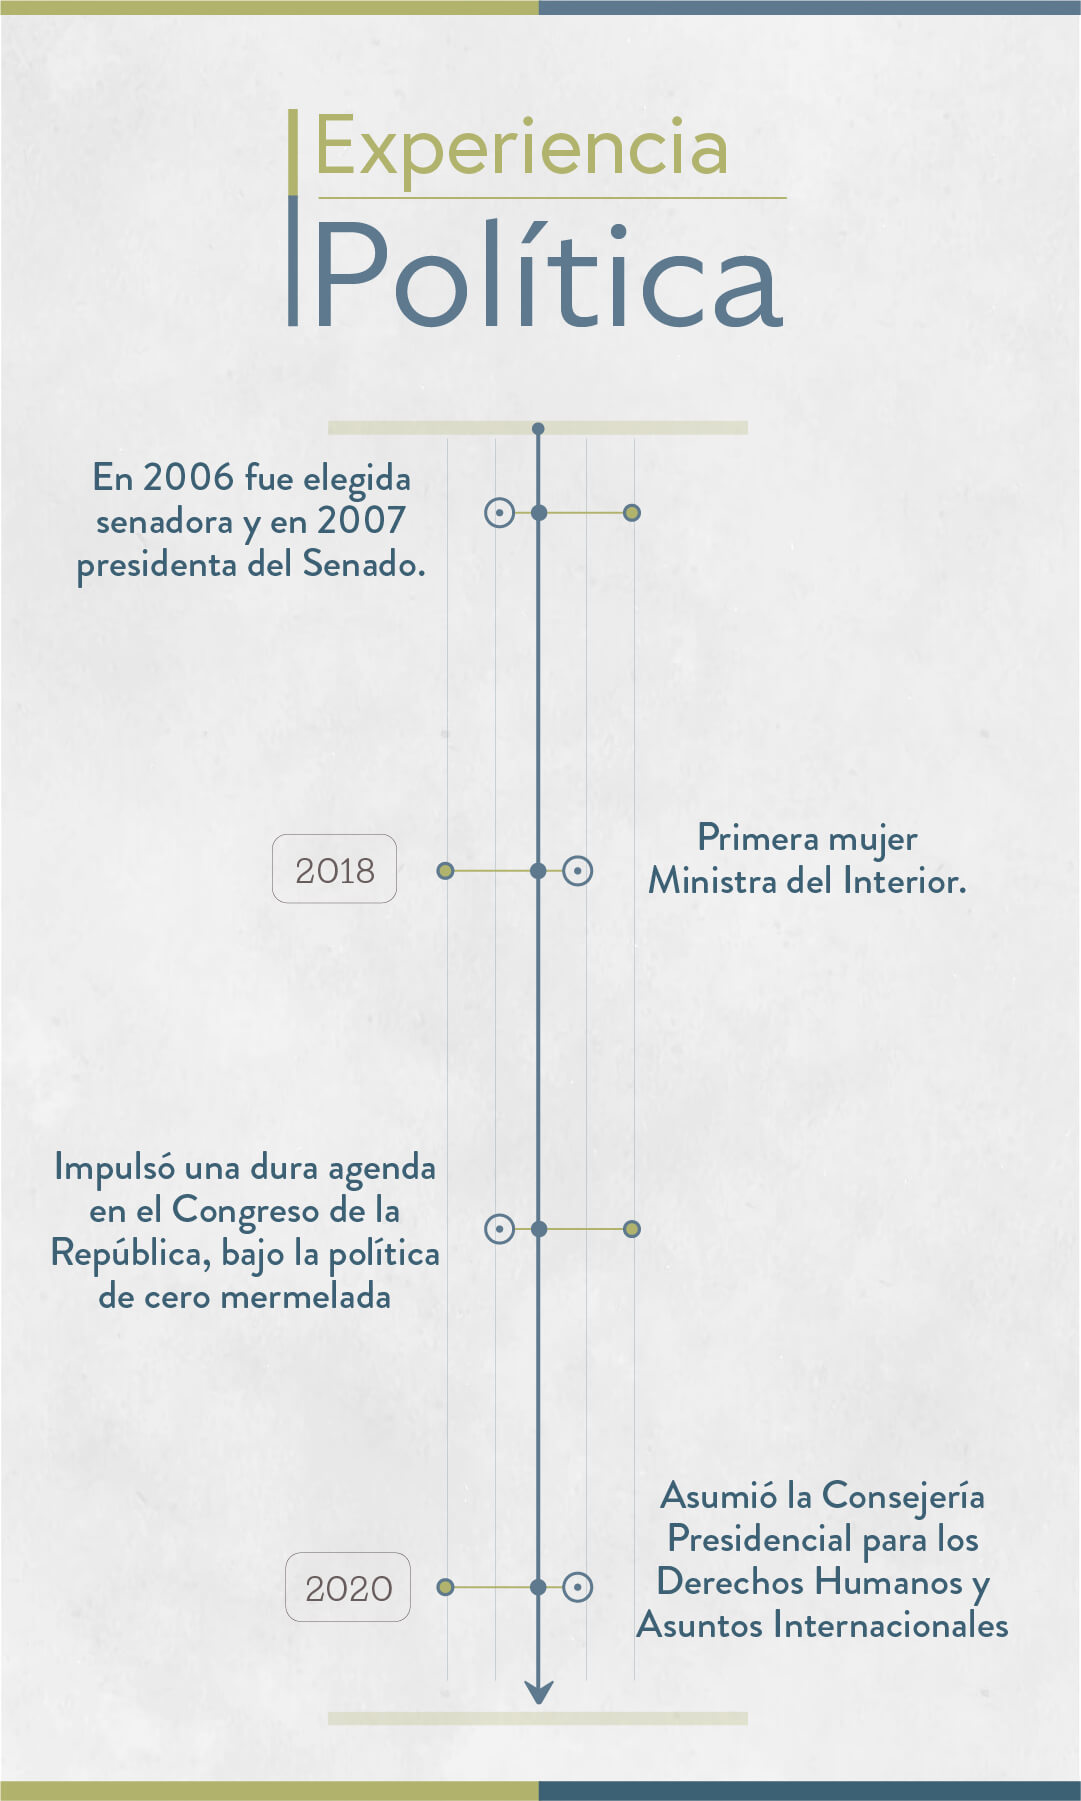 Elecciones 2023: estos son los candidatos a la Gobernación de Cundinamarca - Especial Semana